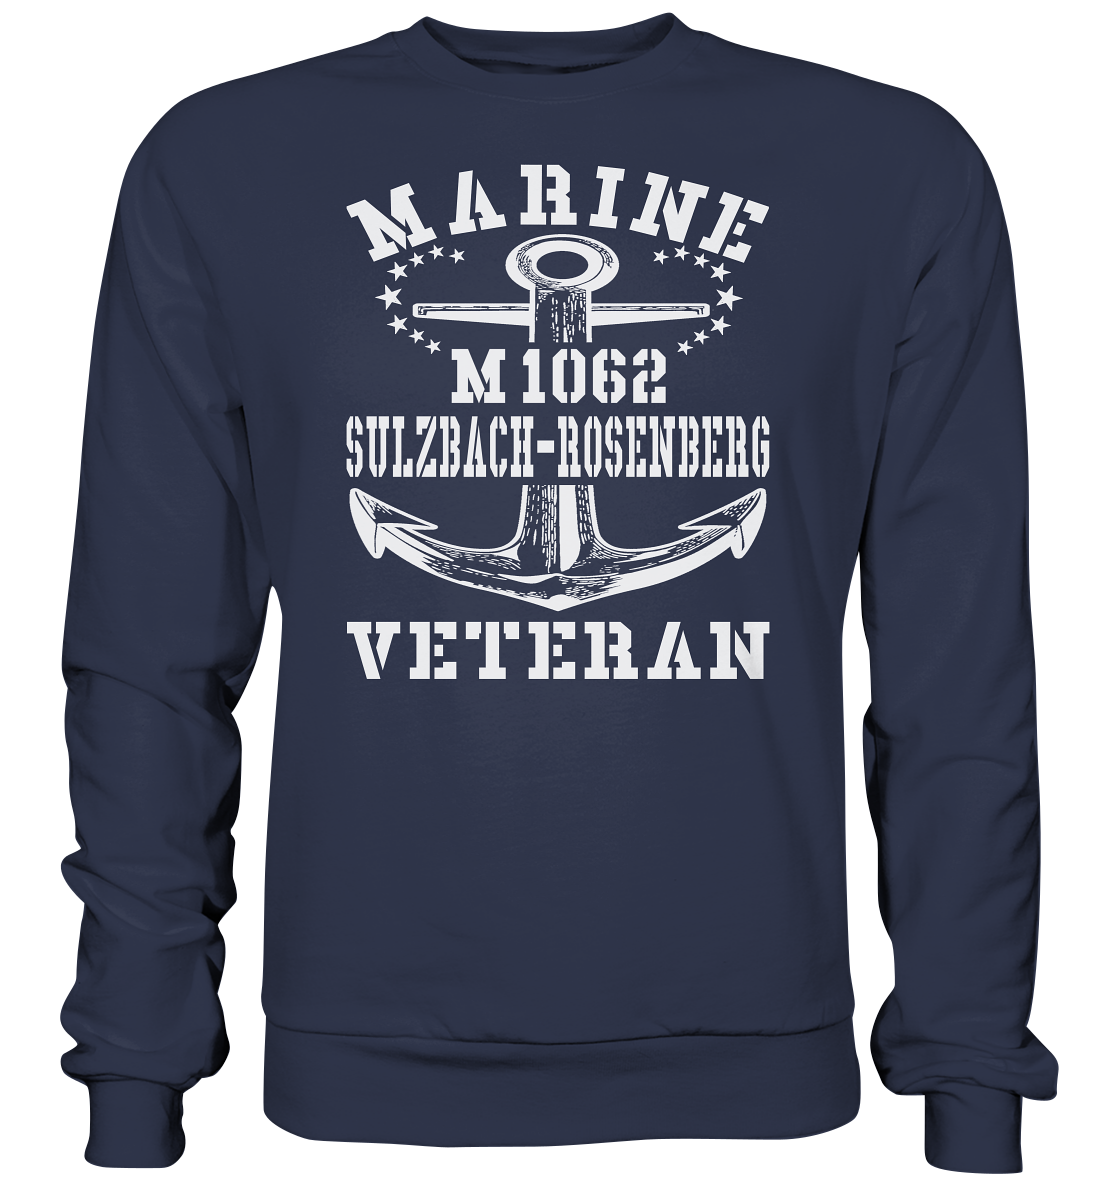 Mij.-Boot M1062 SULZBACH-ROSENBERG Marine Veteran - Premium Sweatshirt